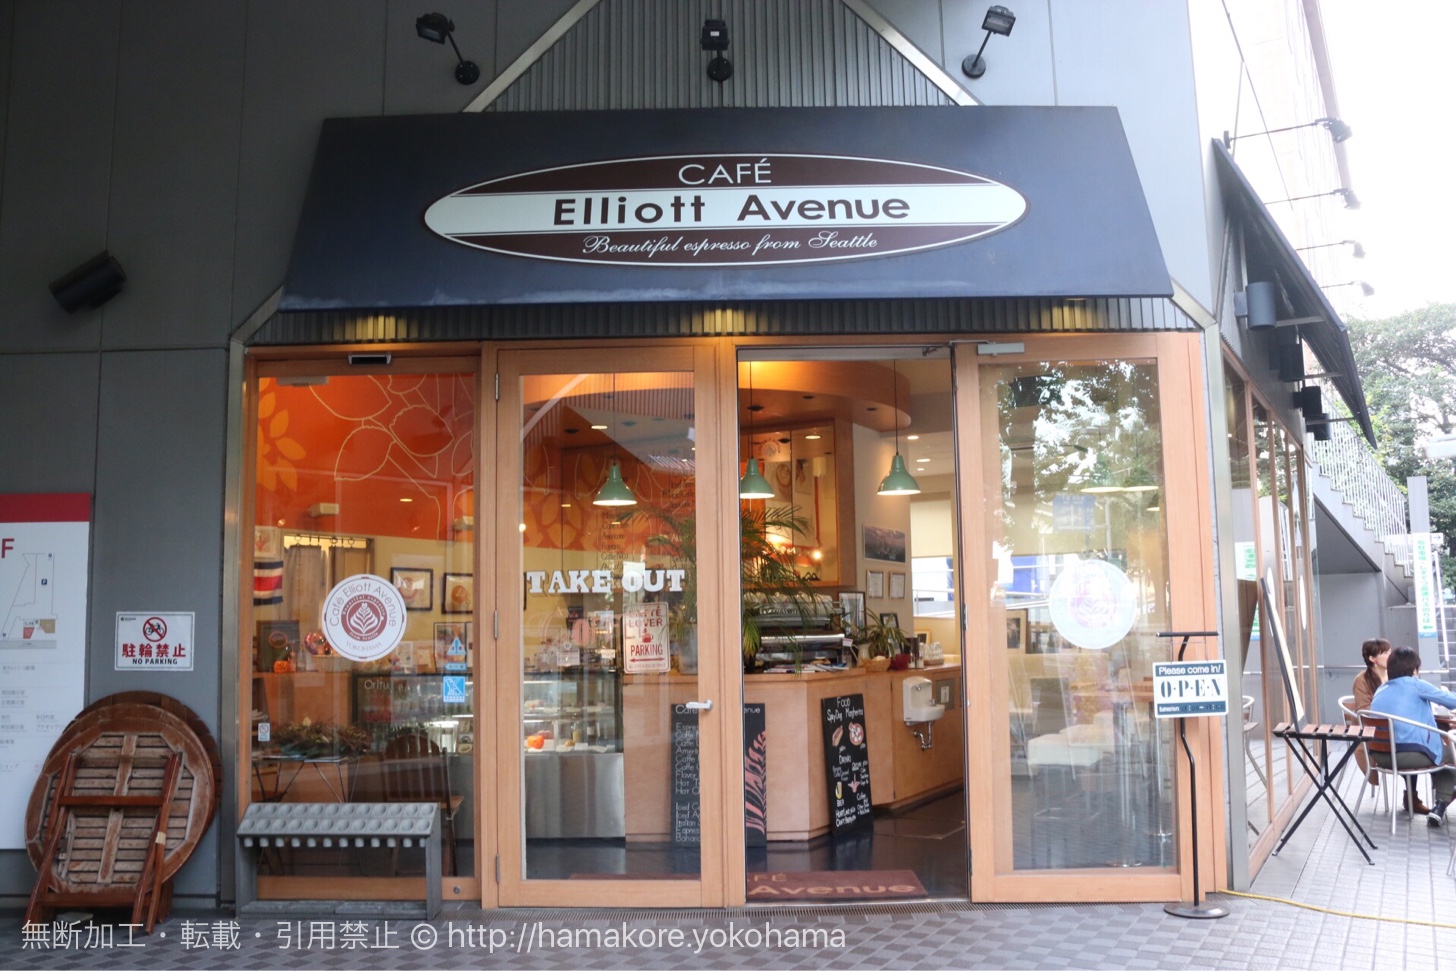 Cafe Elliott Avenue 外観